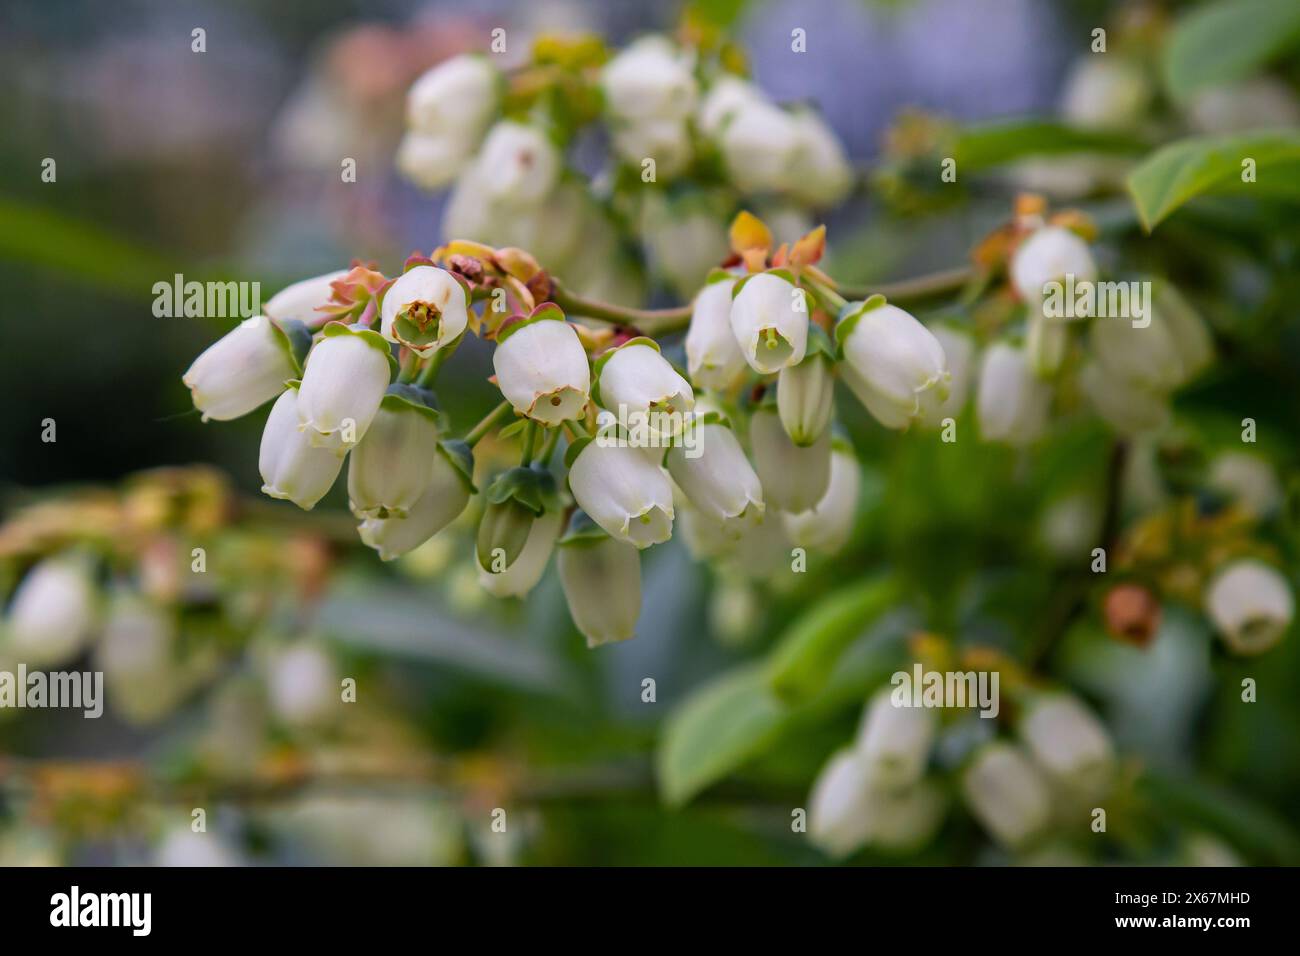 Weiße Blaubeerknospen auf einem Busch. Blaubeerknospenzweig. Weiße Blüten. Makroperspektive. Busch wächst in einem Garten. Natur im Sommer, Frühling. Stockfoto